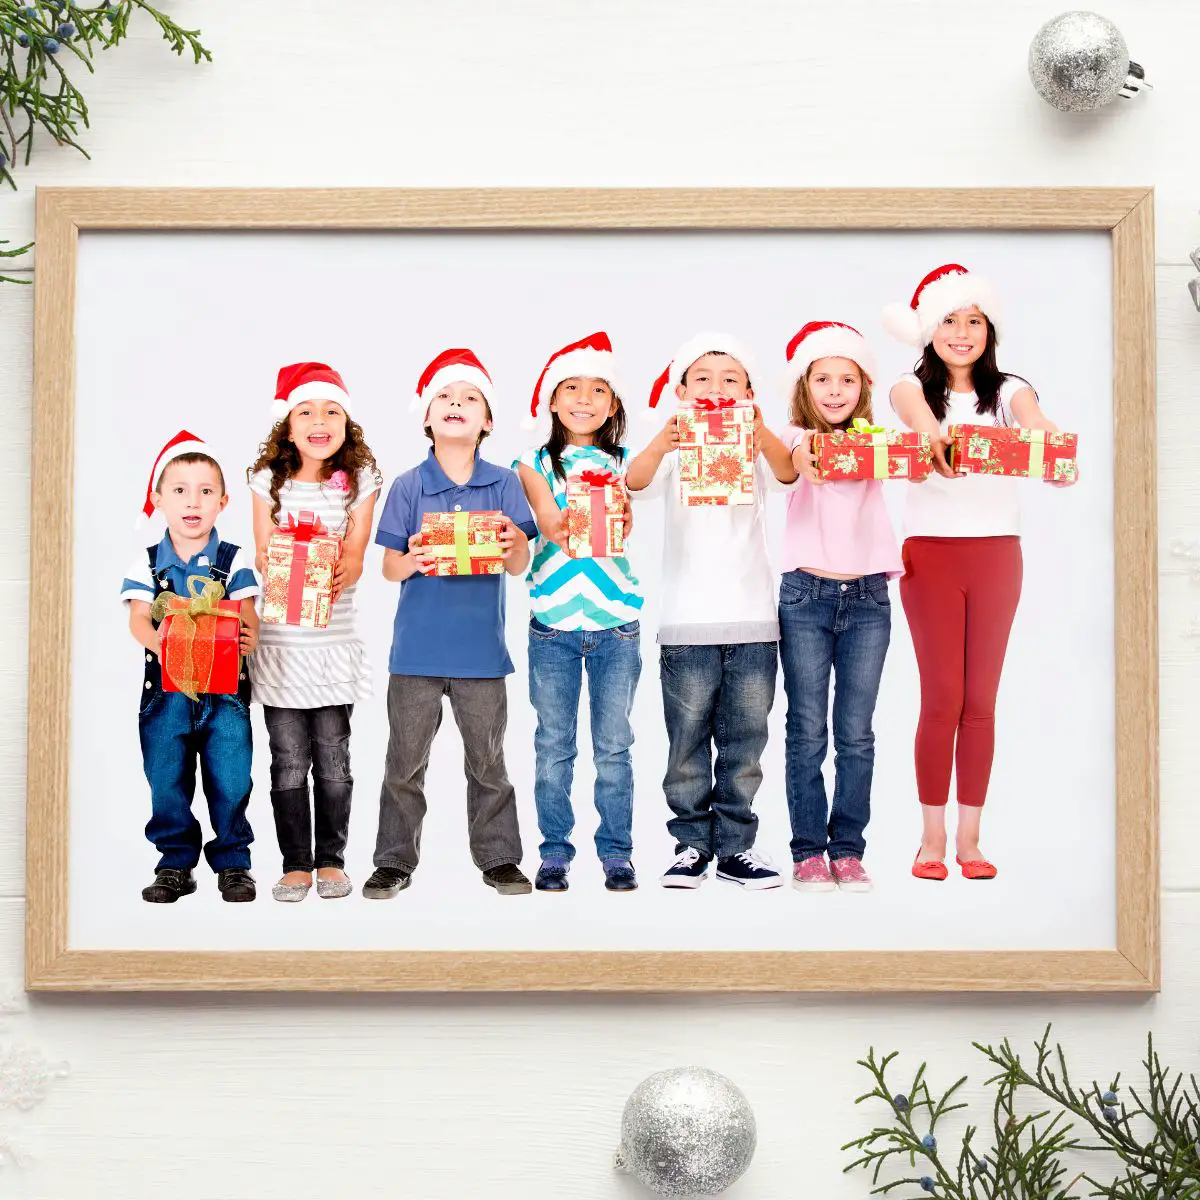 Hellbrauner Bilderrahmen auf weißem Hintergrund. In dem Bilderrahmen sind verschieden große Kinder im Grundschulalter zu sehen. Der Bilderrahmen liegt auf einem weihnachtlich geschmückten Tisch.